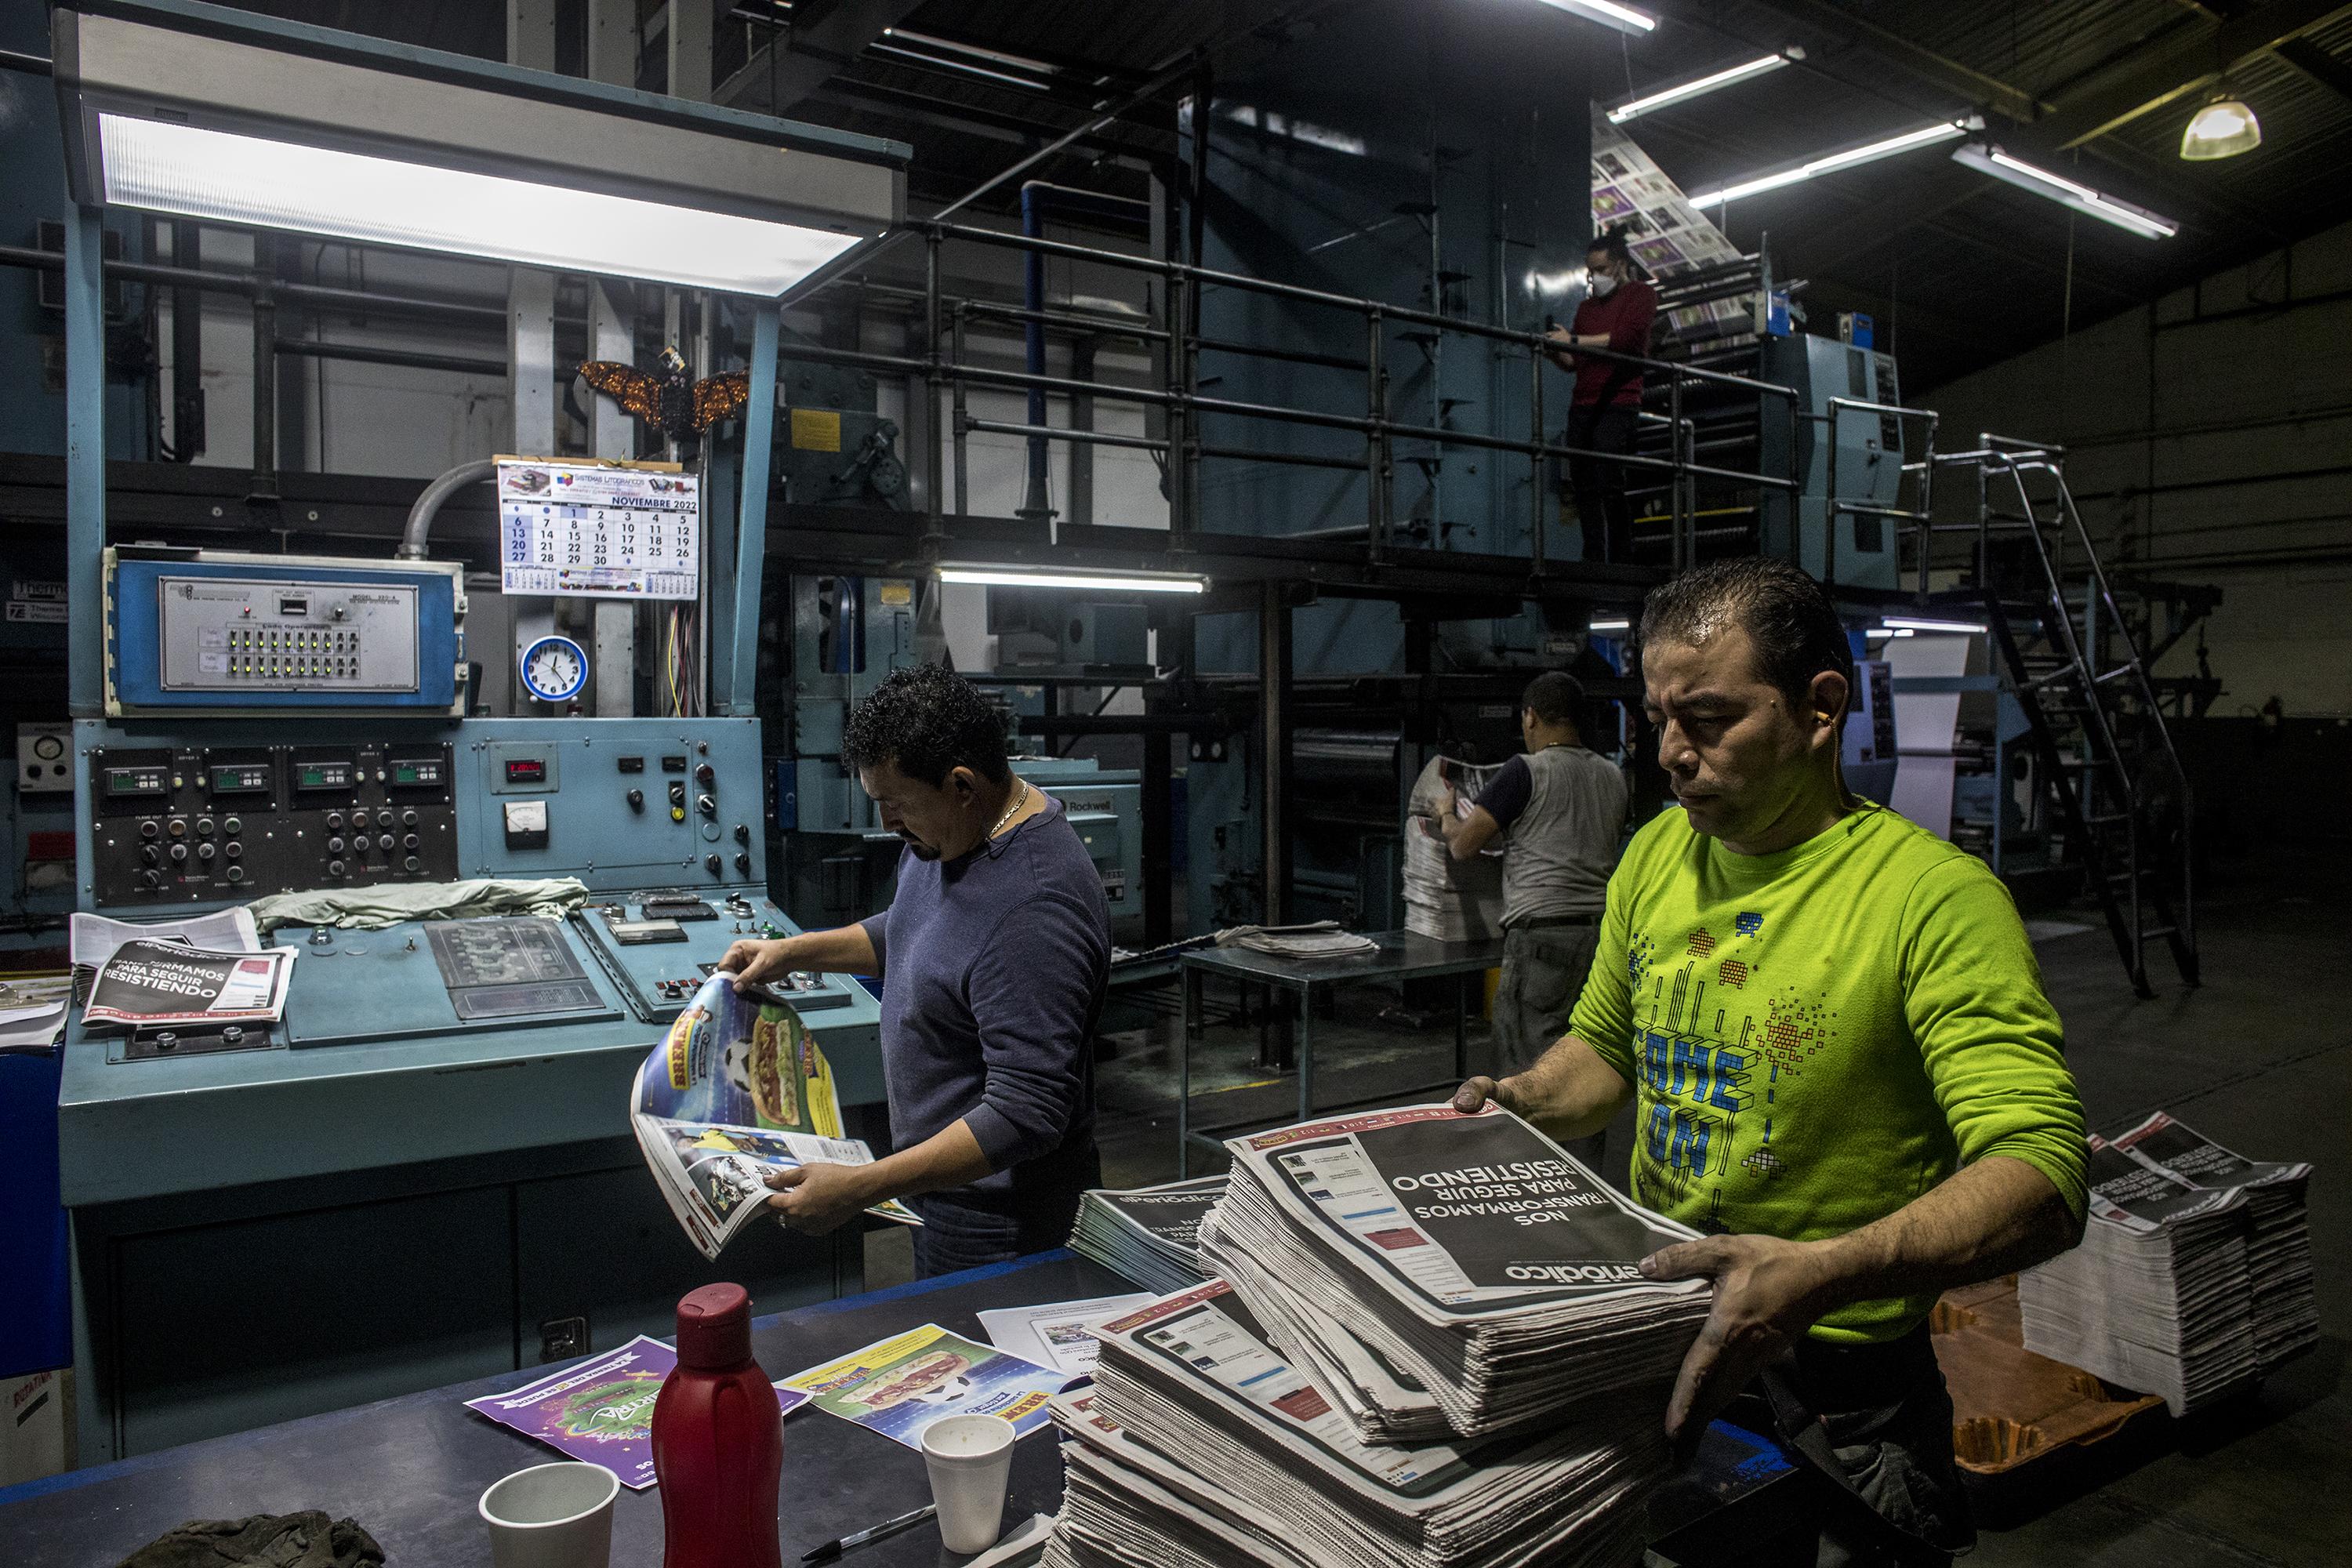 Empleados de producción trabajan en la impresión de la última edición de El Periódico, de Guatemala. Foto de El Faro: Simone Dalmasso/ Plaza Pública. 